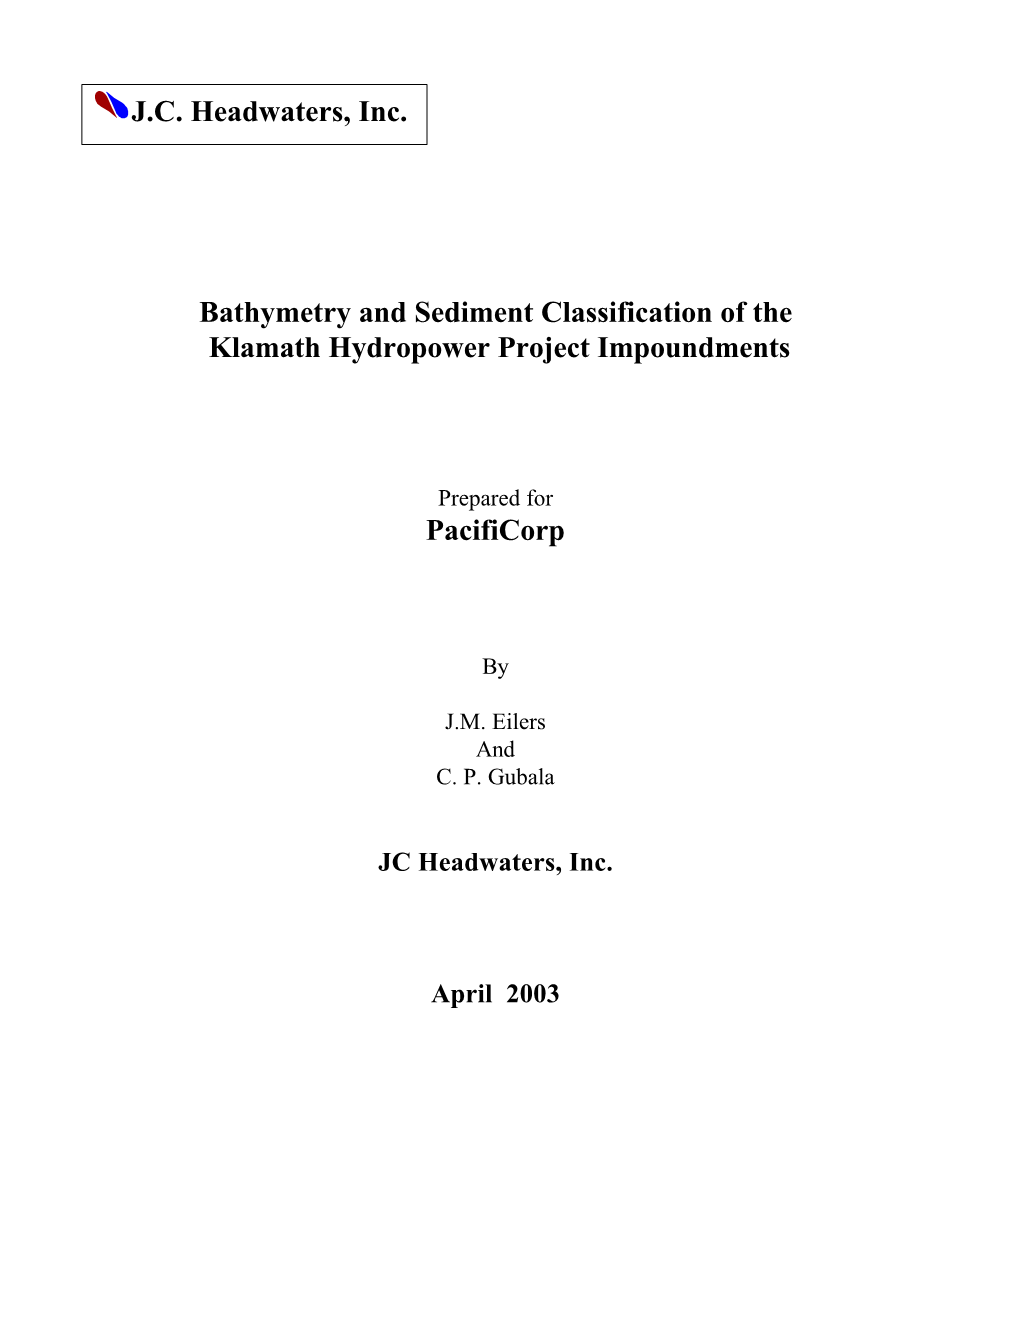 Klamath Bathymetry Final Report April 2003.Doc